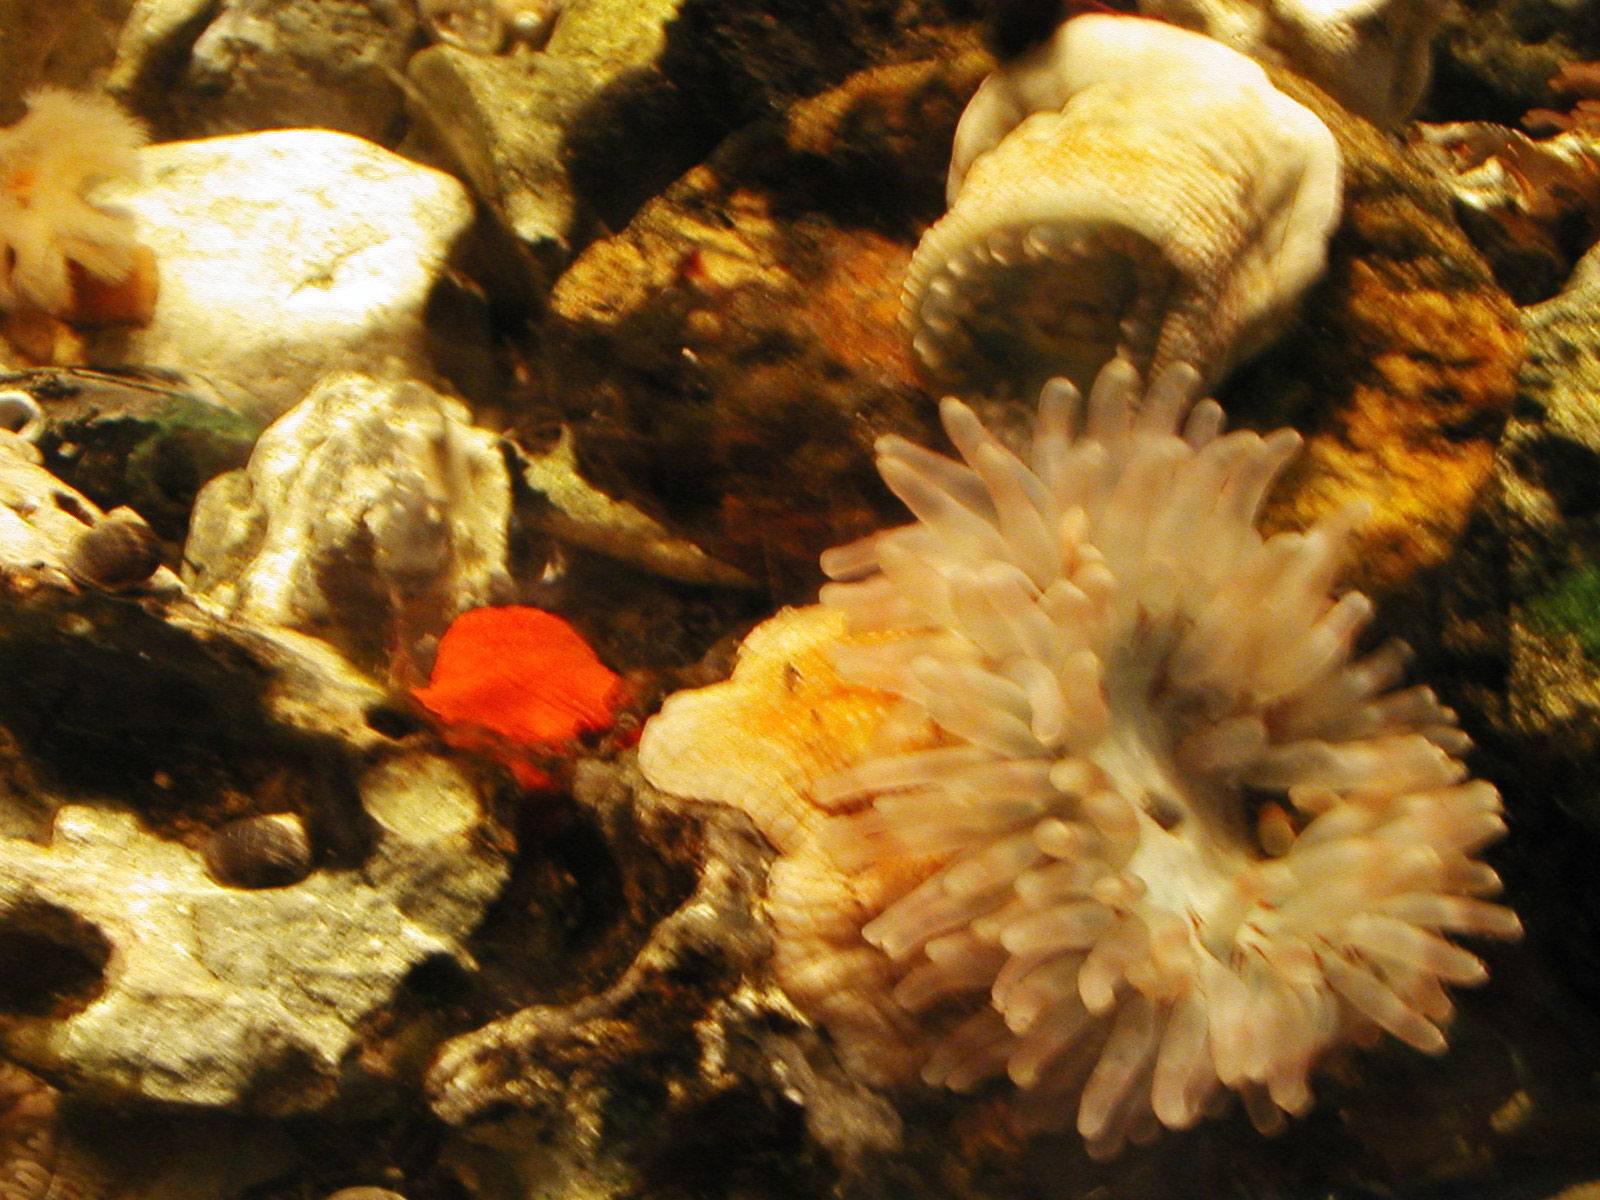 Aquarium, Colorfull, Fish, Sea, Sealife, HQ Photo